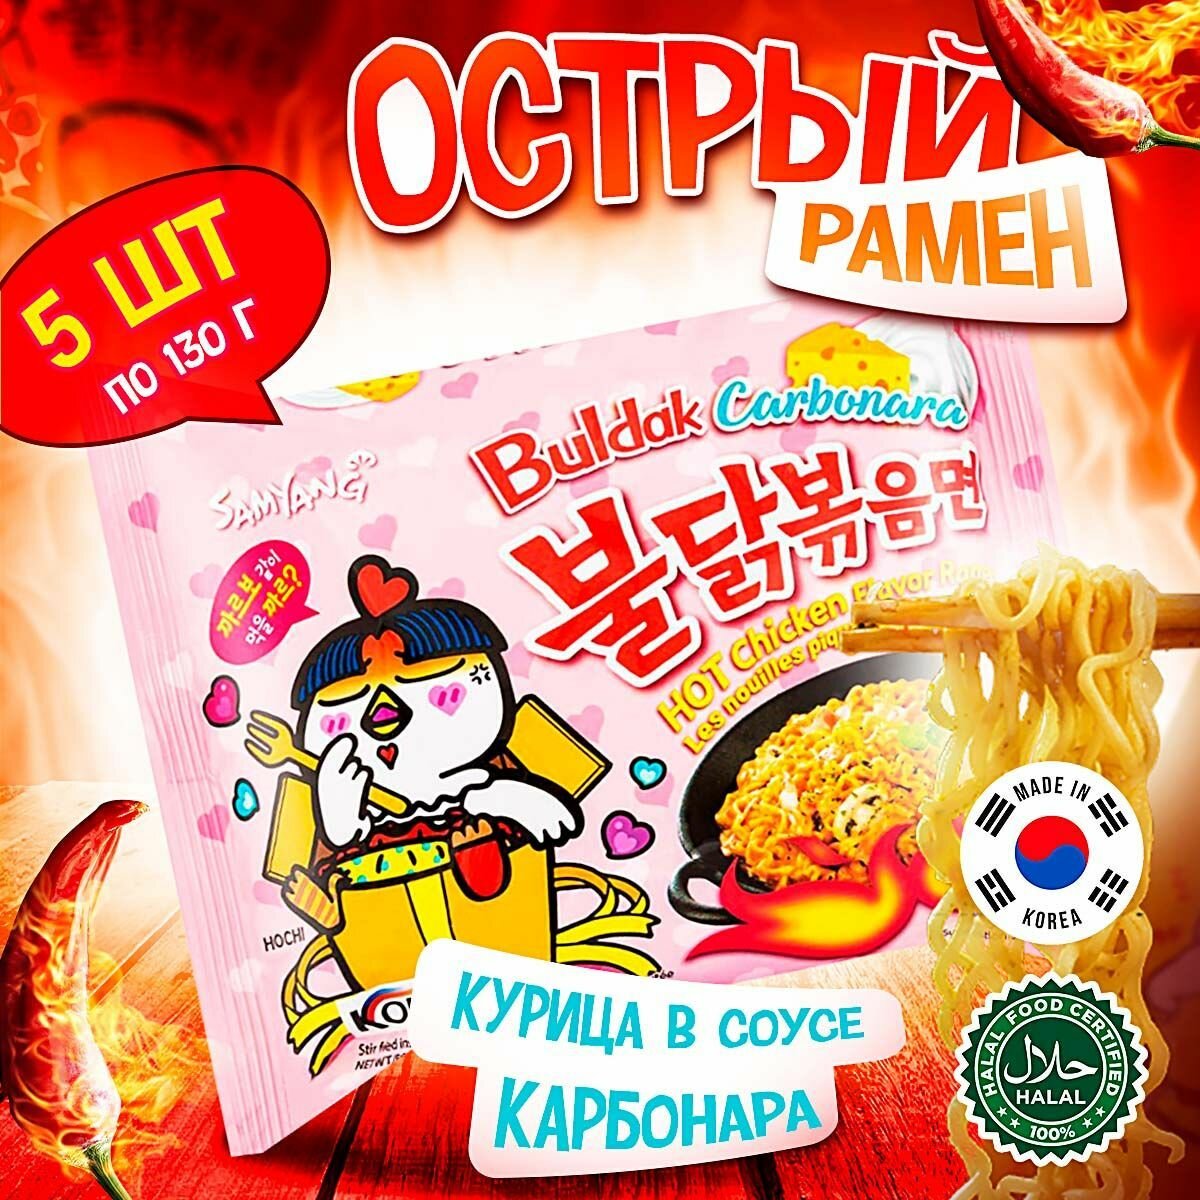 Острая корейская лапша Samyang Buldak Carbonara Hot Chicken Flavor Ramen со вкусом курицы в соусе карбонара (Корея), 130 г (5 шт)